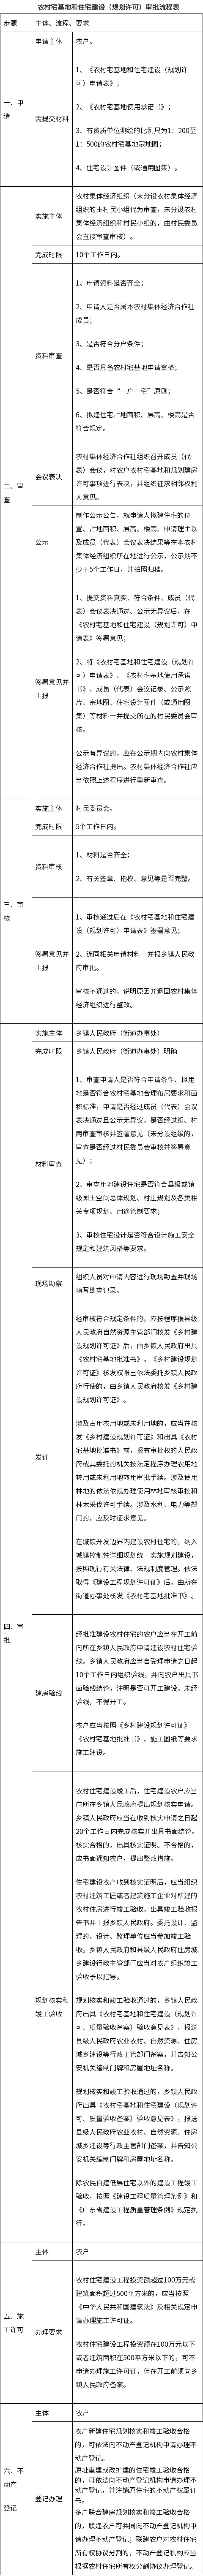 湛江市人民政府关于印发湛江市农村宅基地和住宅建设管理暂行办法的通知